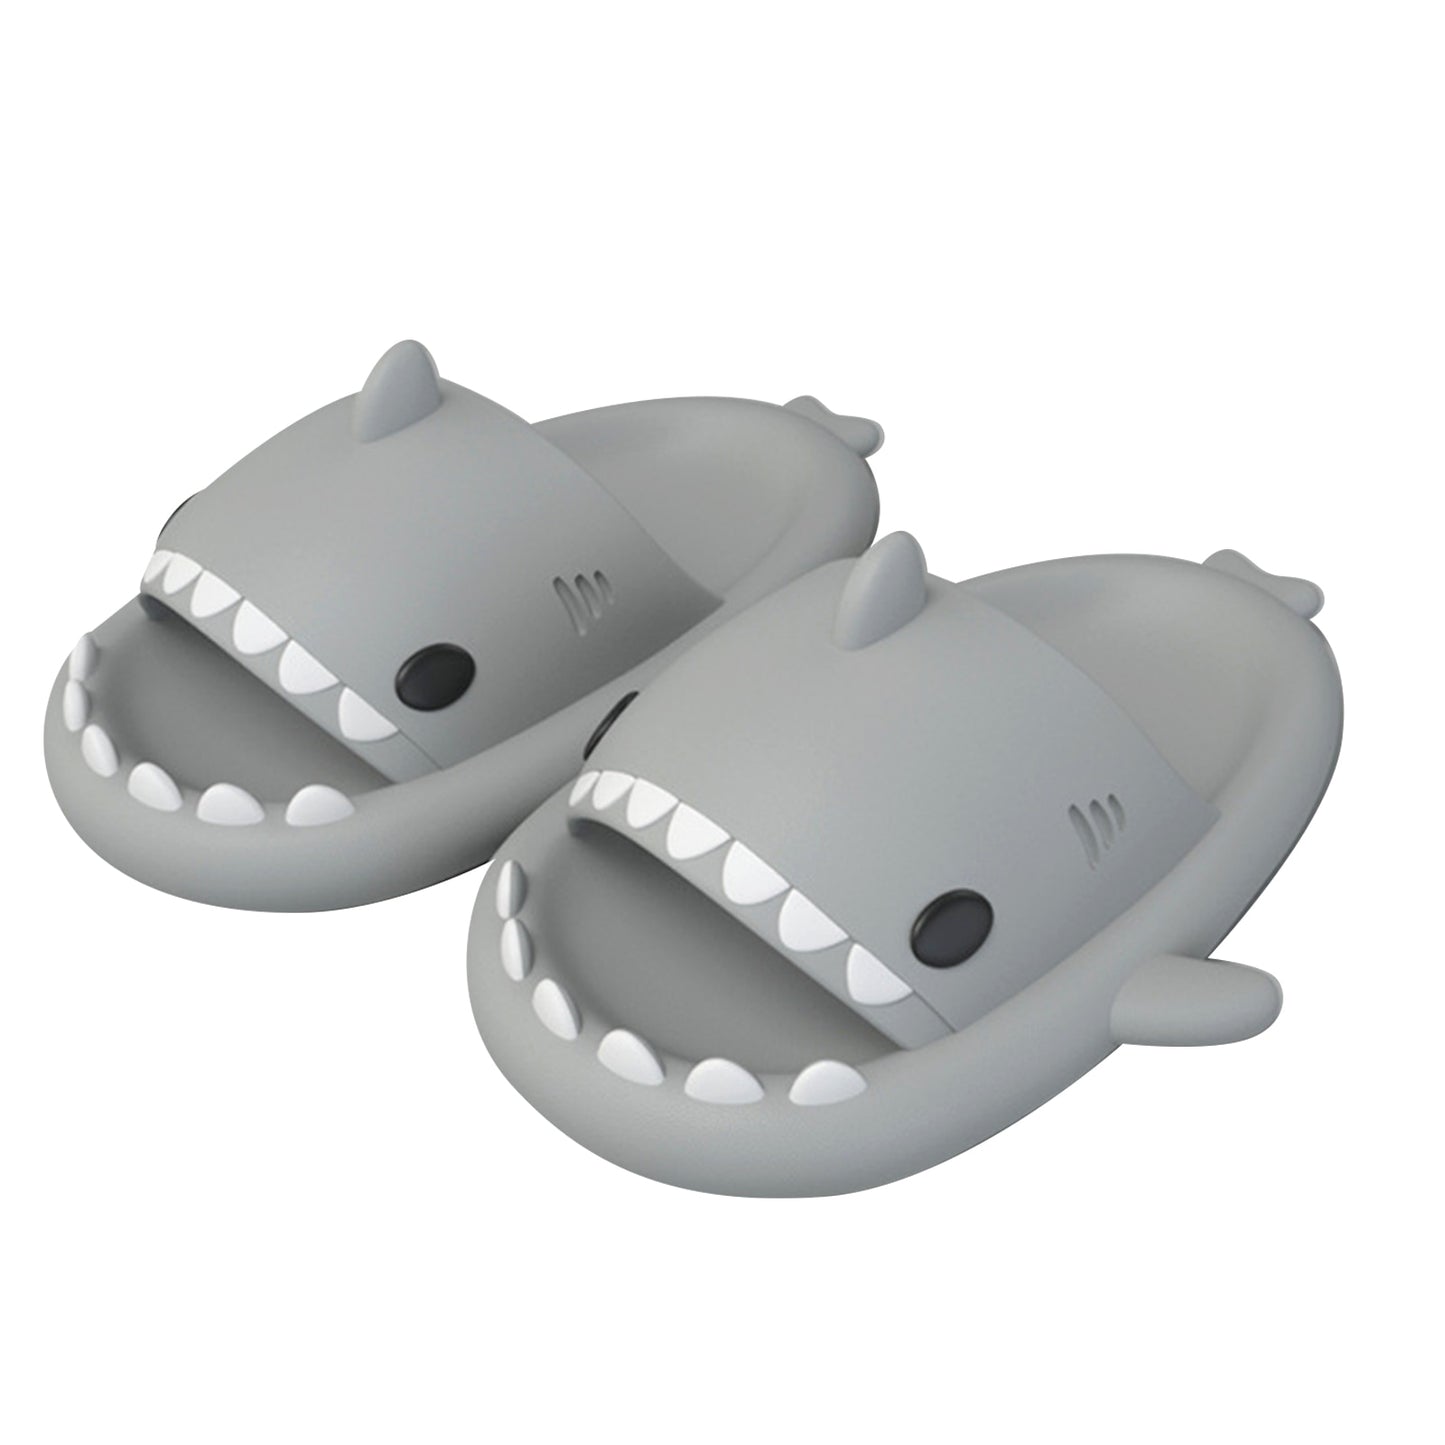 Unisex Shark Non-Slip Open Toe Sandals